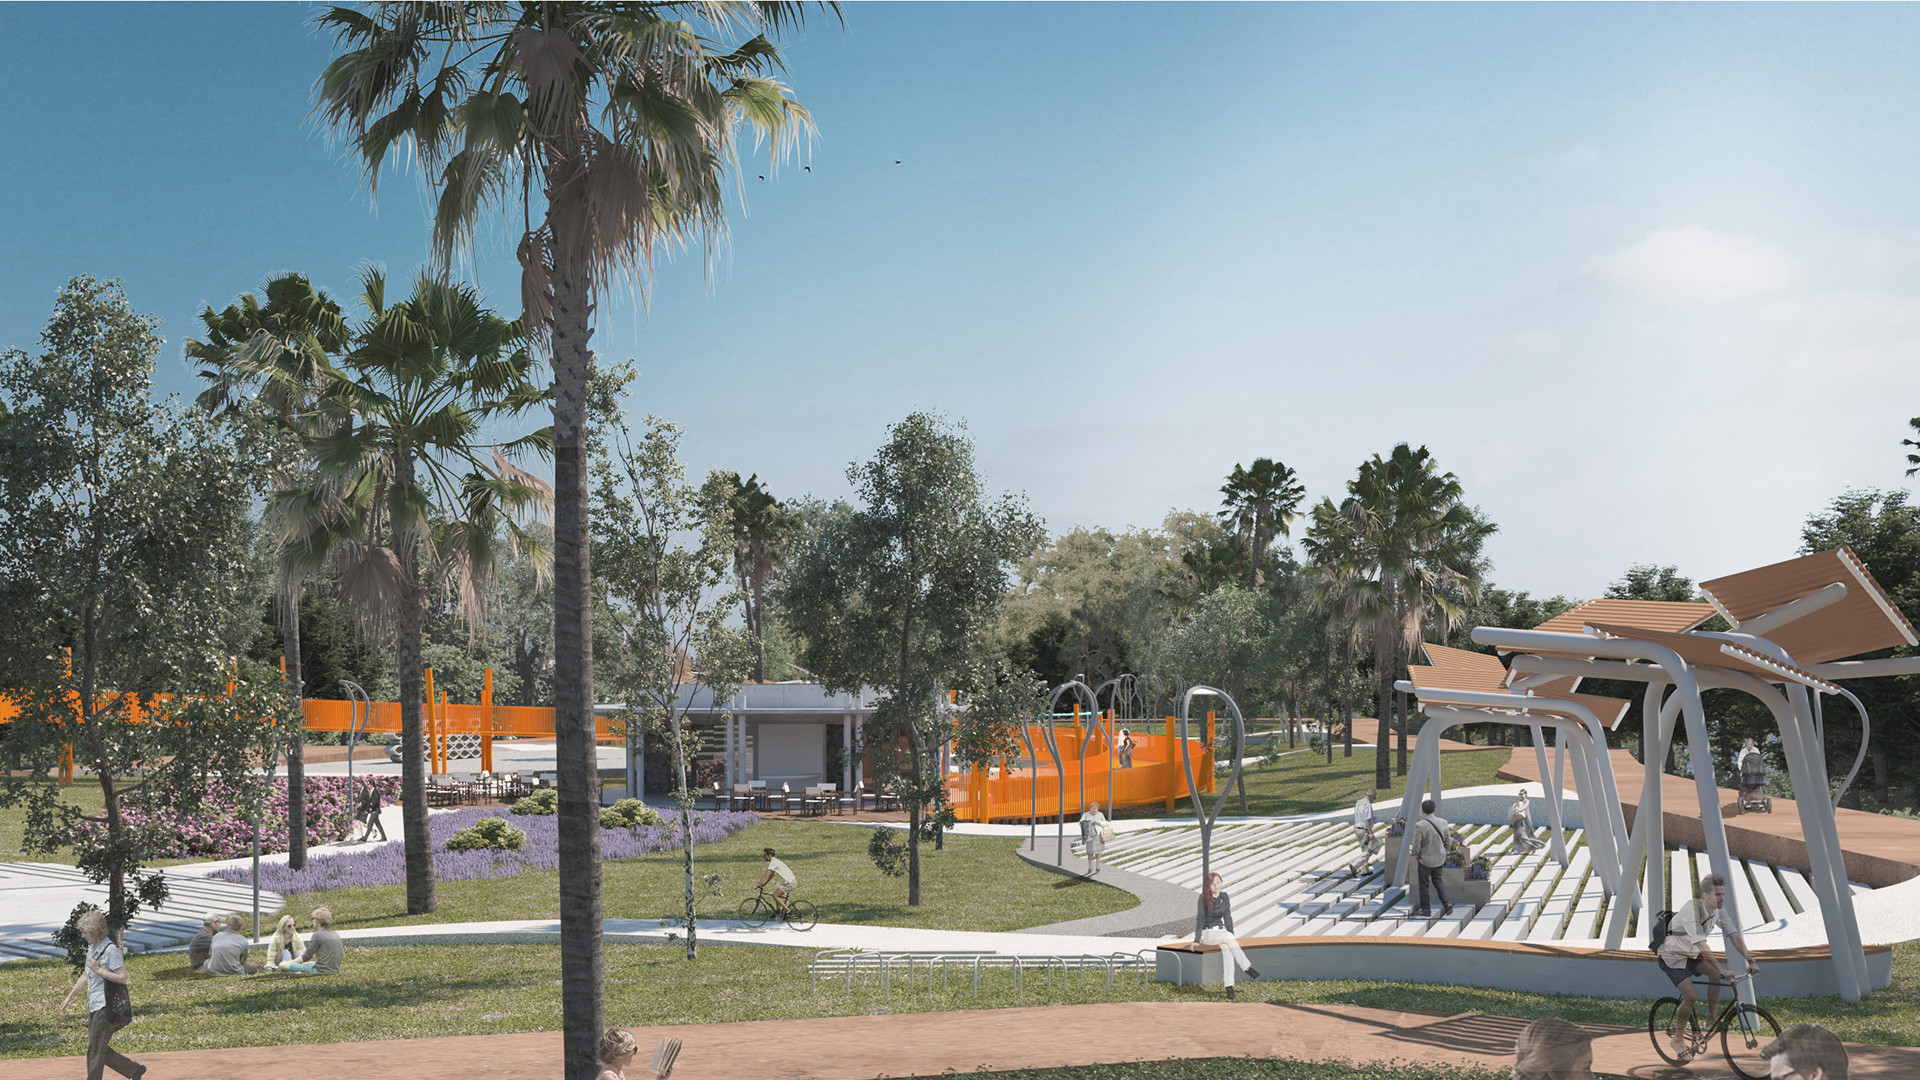 Comp_0006 - Salina Larnaca Municipal Park